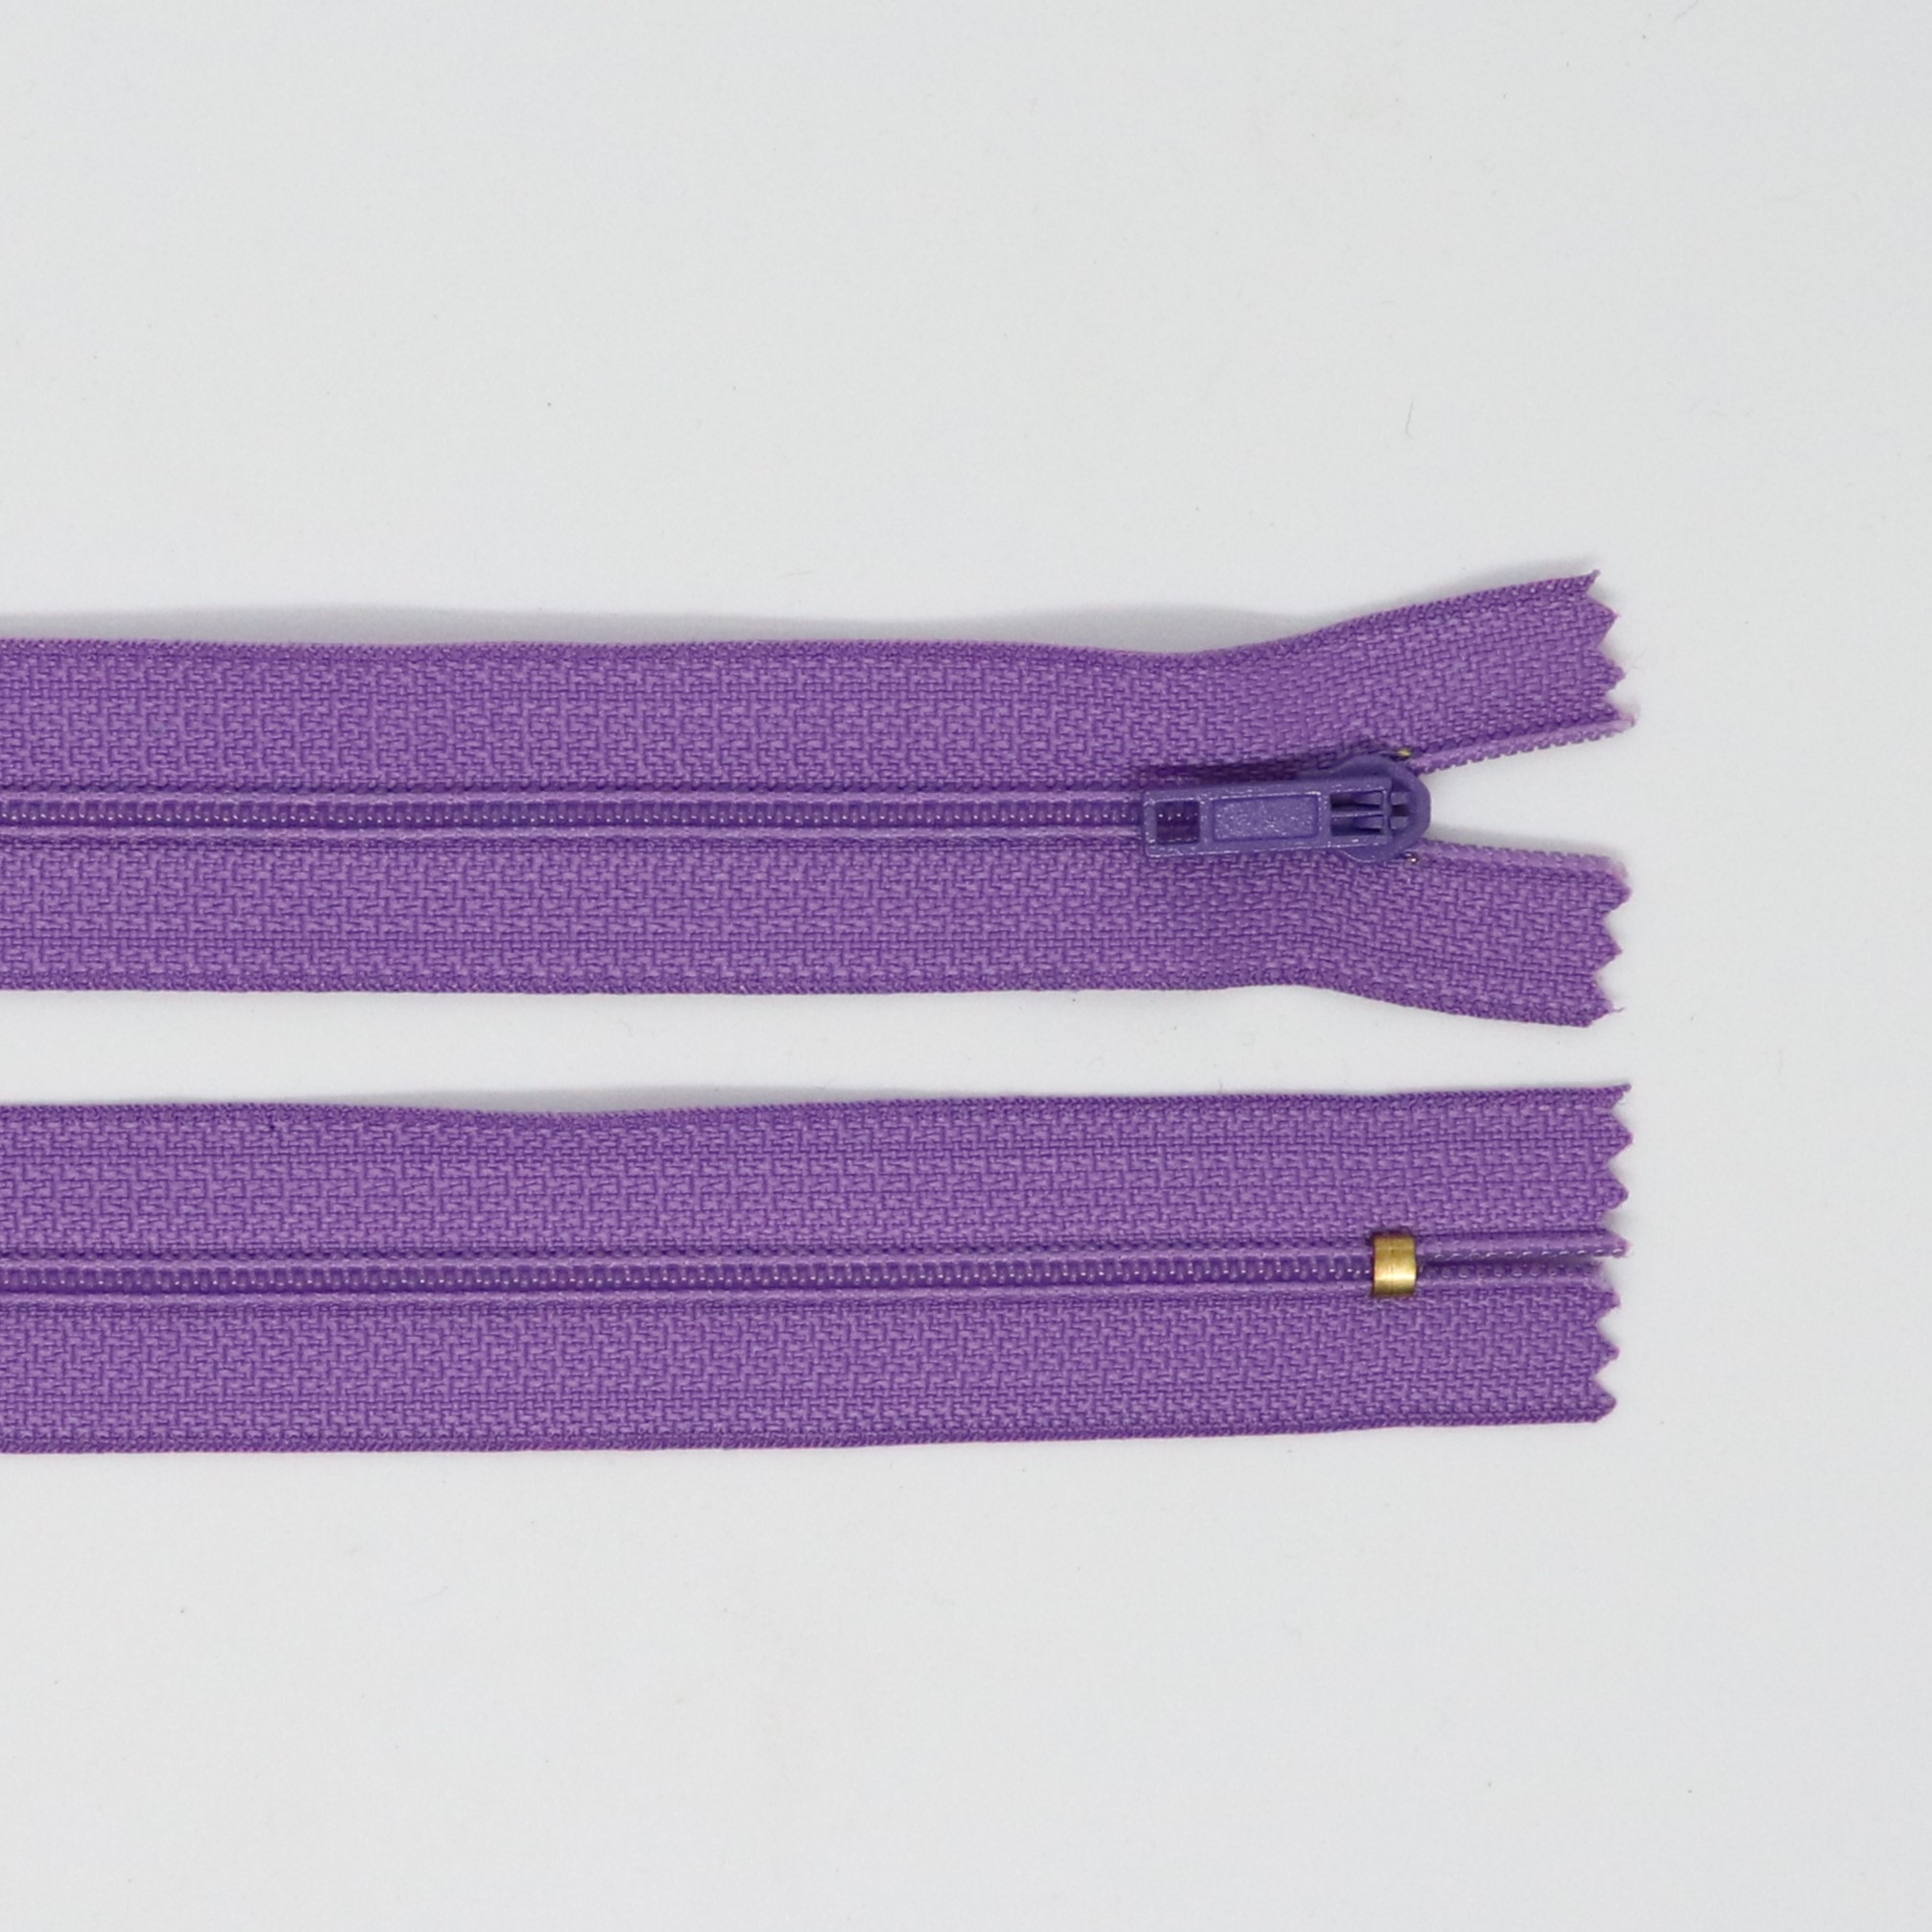 Spirálový zip, šíøe 3 mm, délka 50 cm, fialová - zvìtšit obrázek